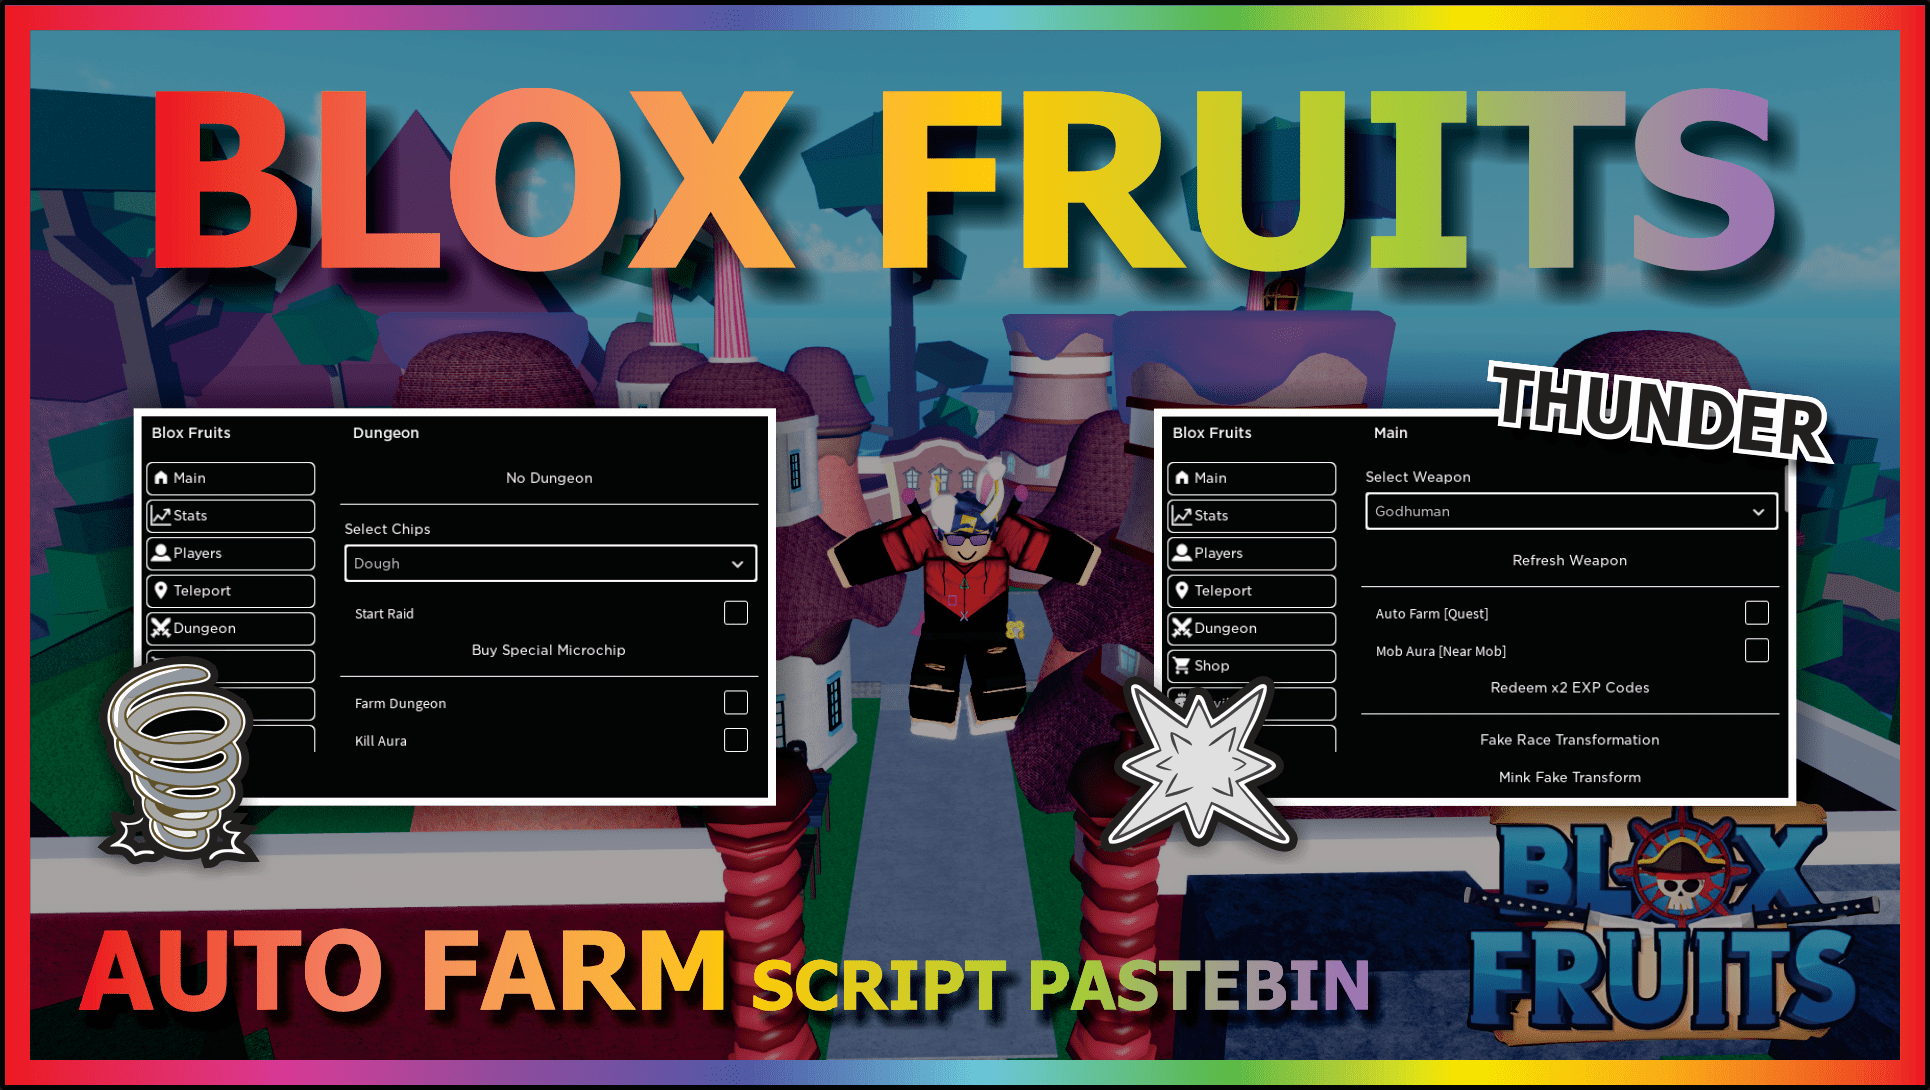 Blox Fruits Script Pastebin 2022 – ScriptPastebin